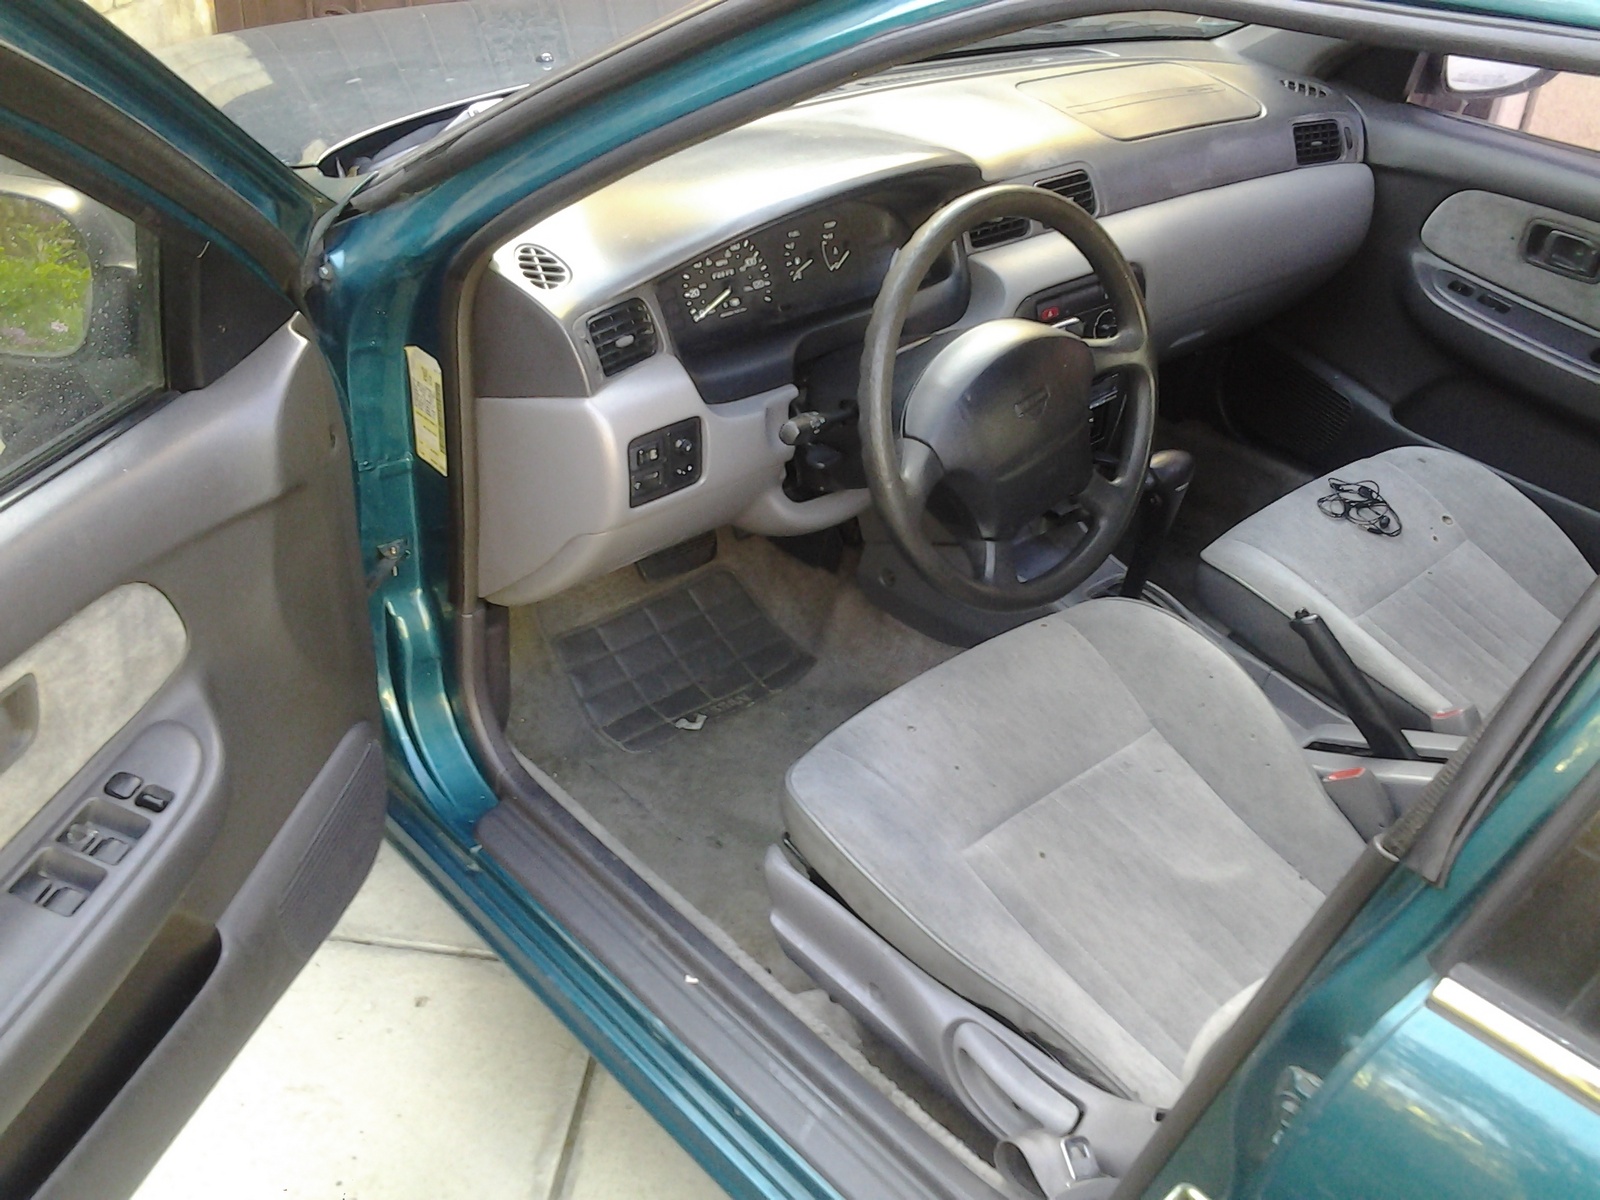 1996 Nissan sentra interior #9